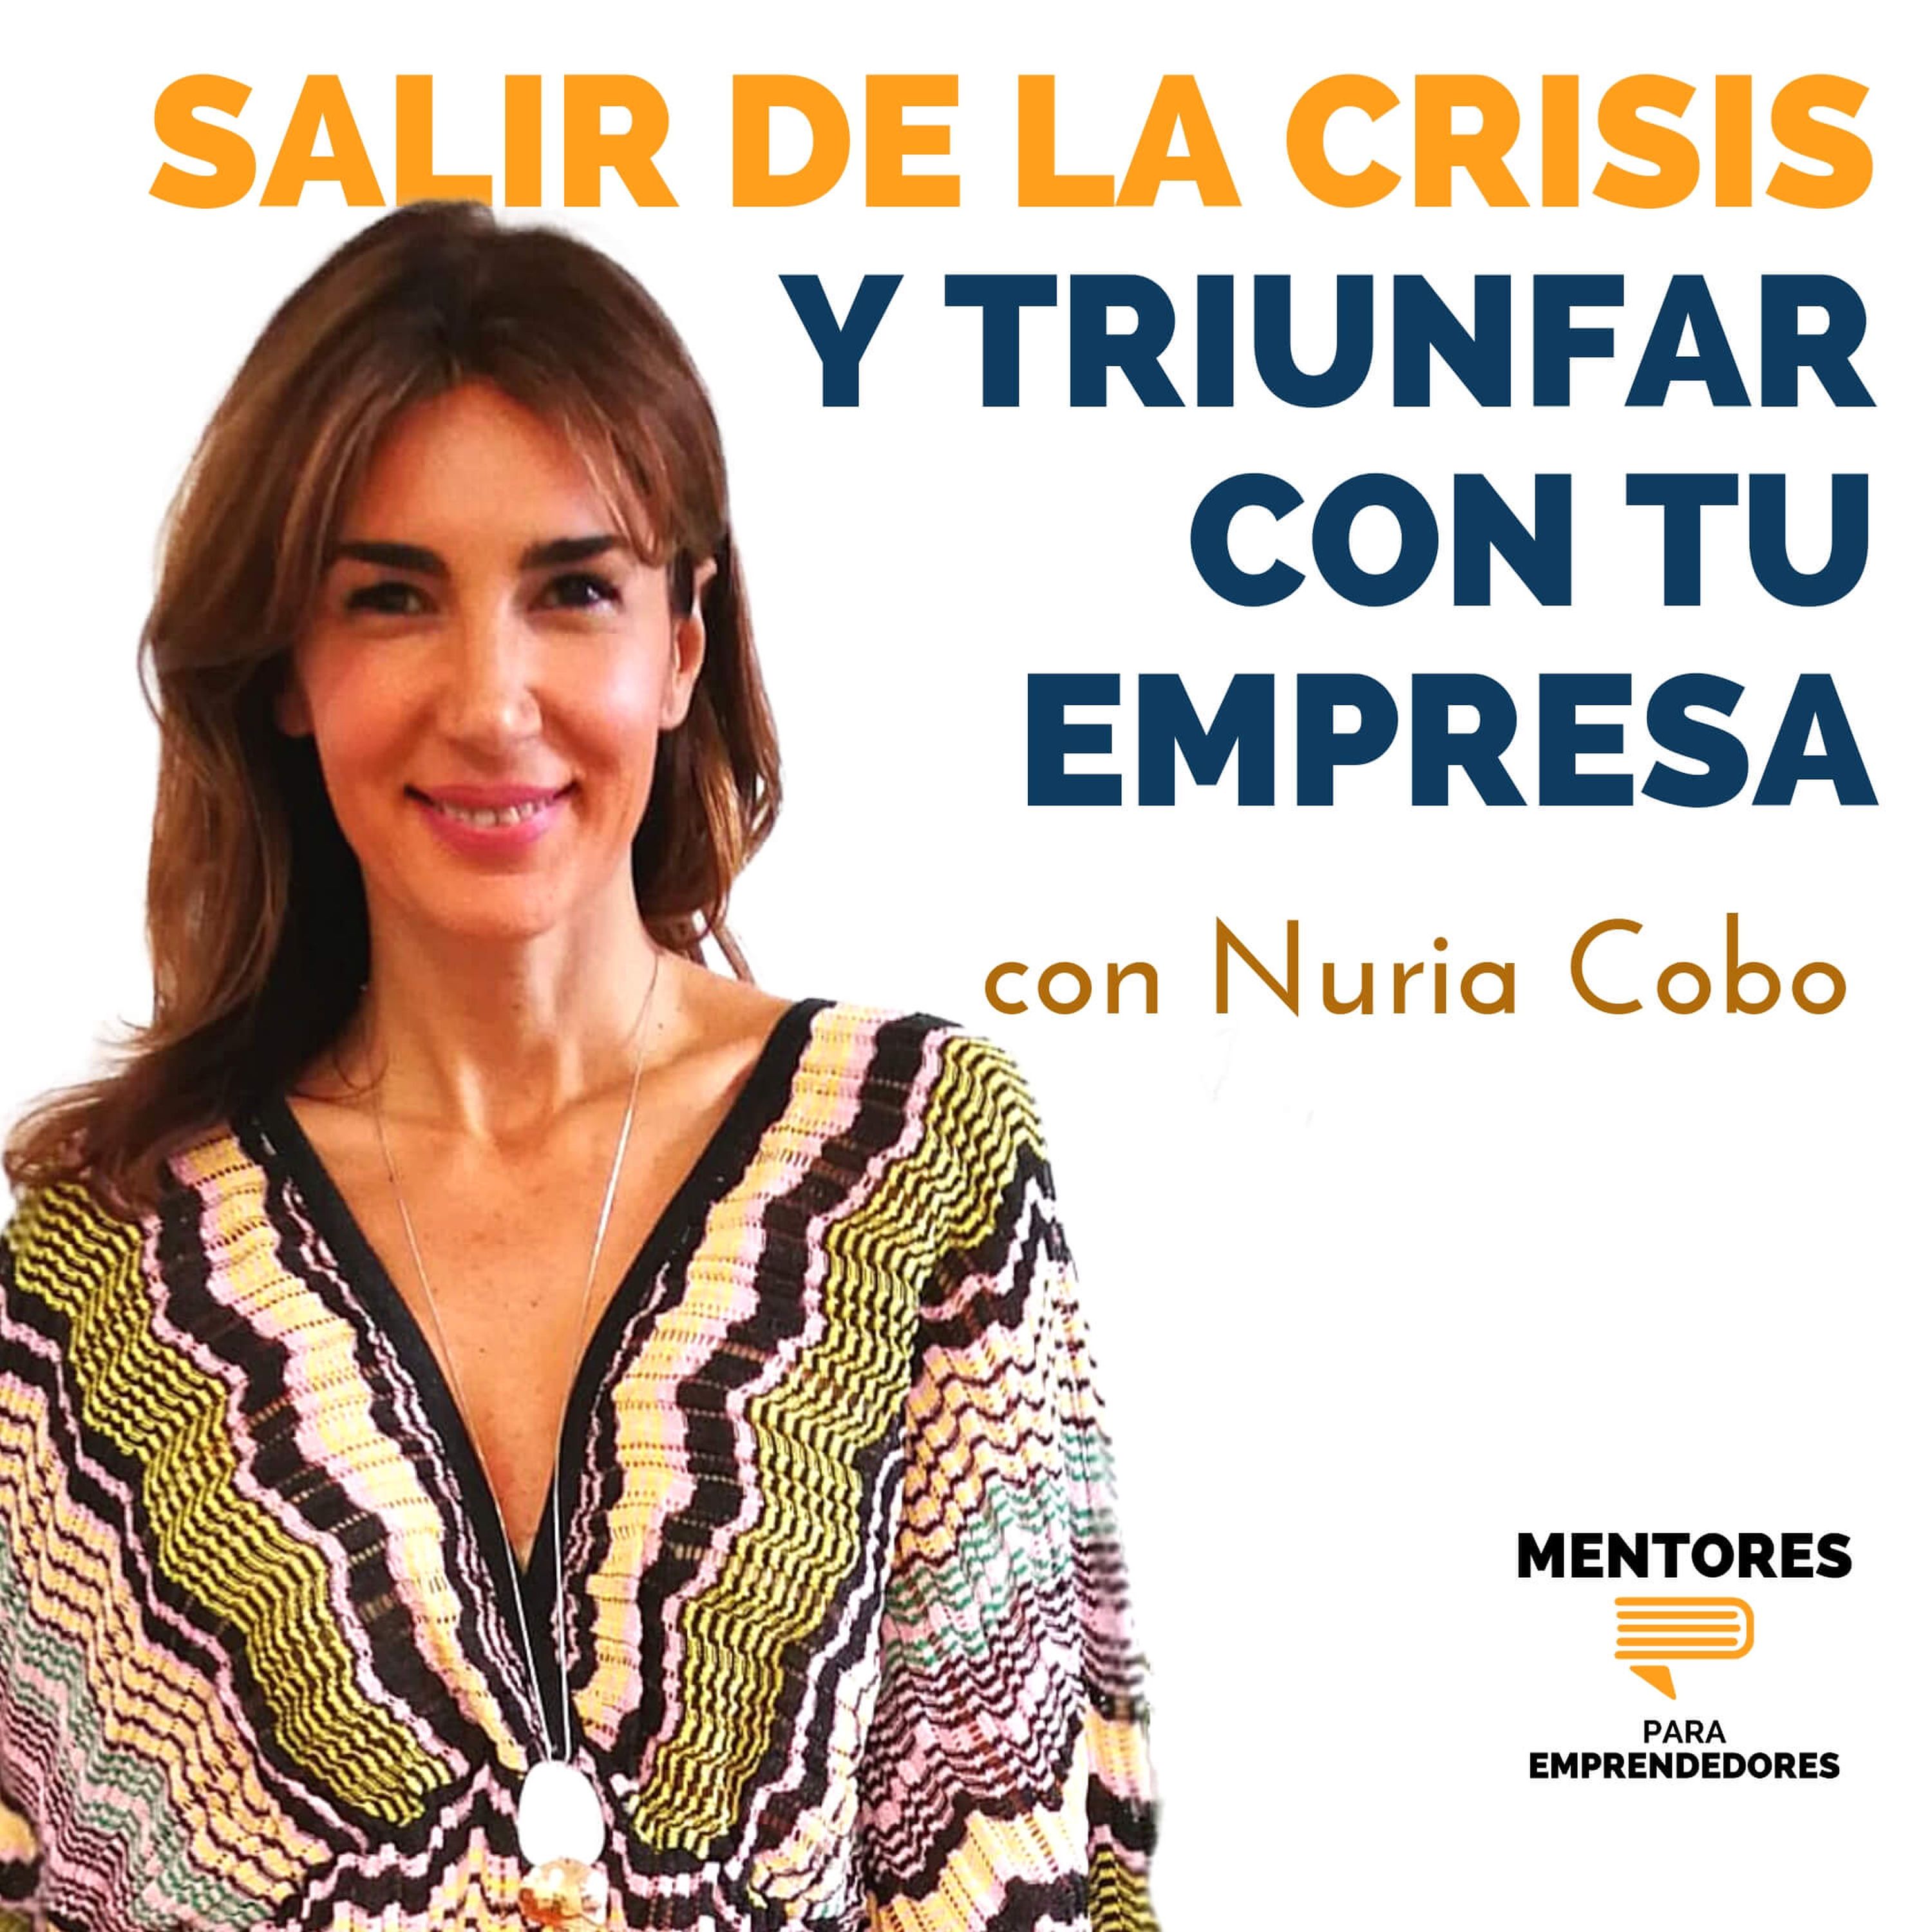 Cómo salir de la Crisis y triunfar con tu empresa, con Nuria Cobo - MENTORES